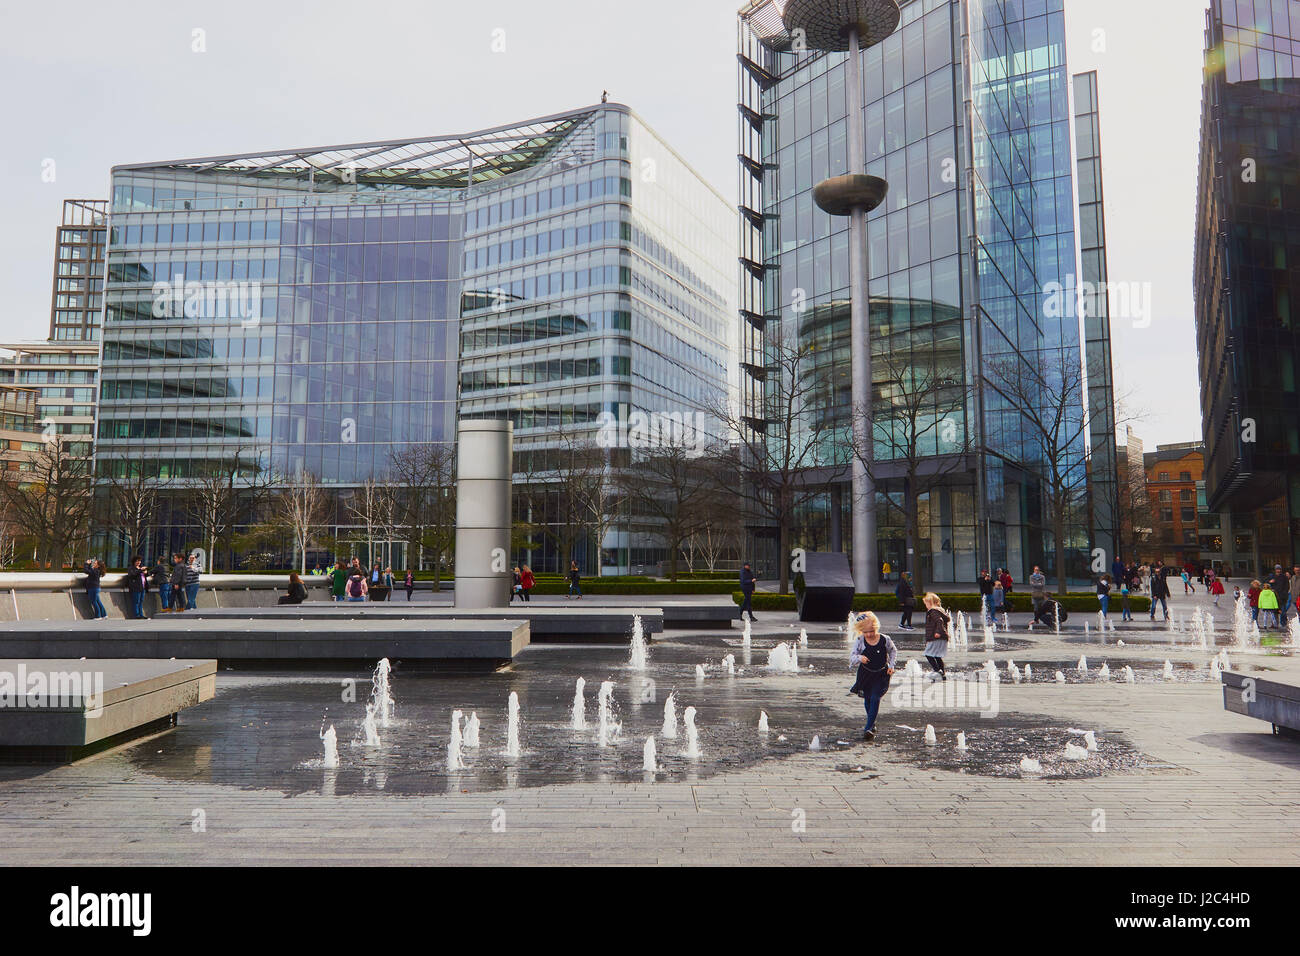 L'architecture contemporaine et de fontaines, Plus Londres, South Bank, Londres, Angleterre Banque D'Images